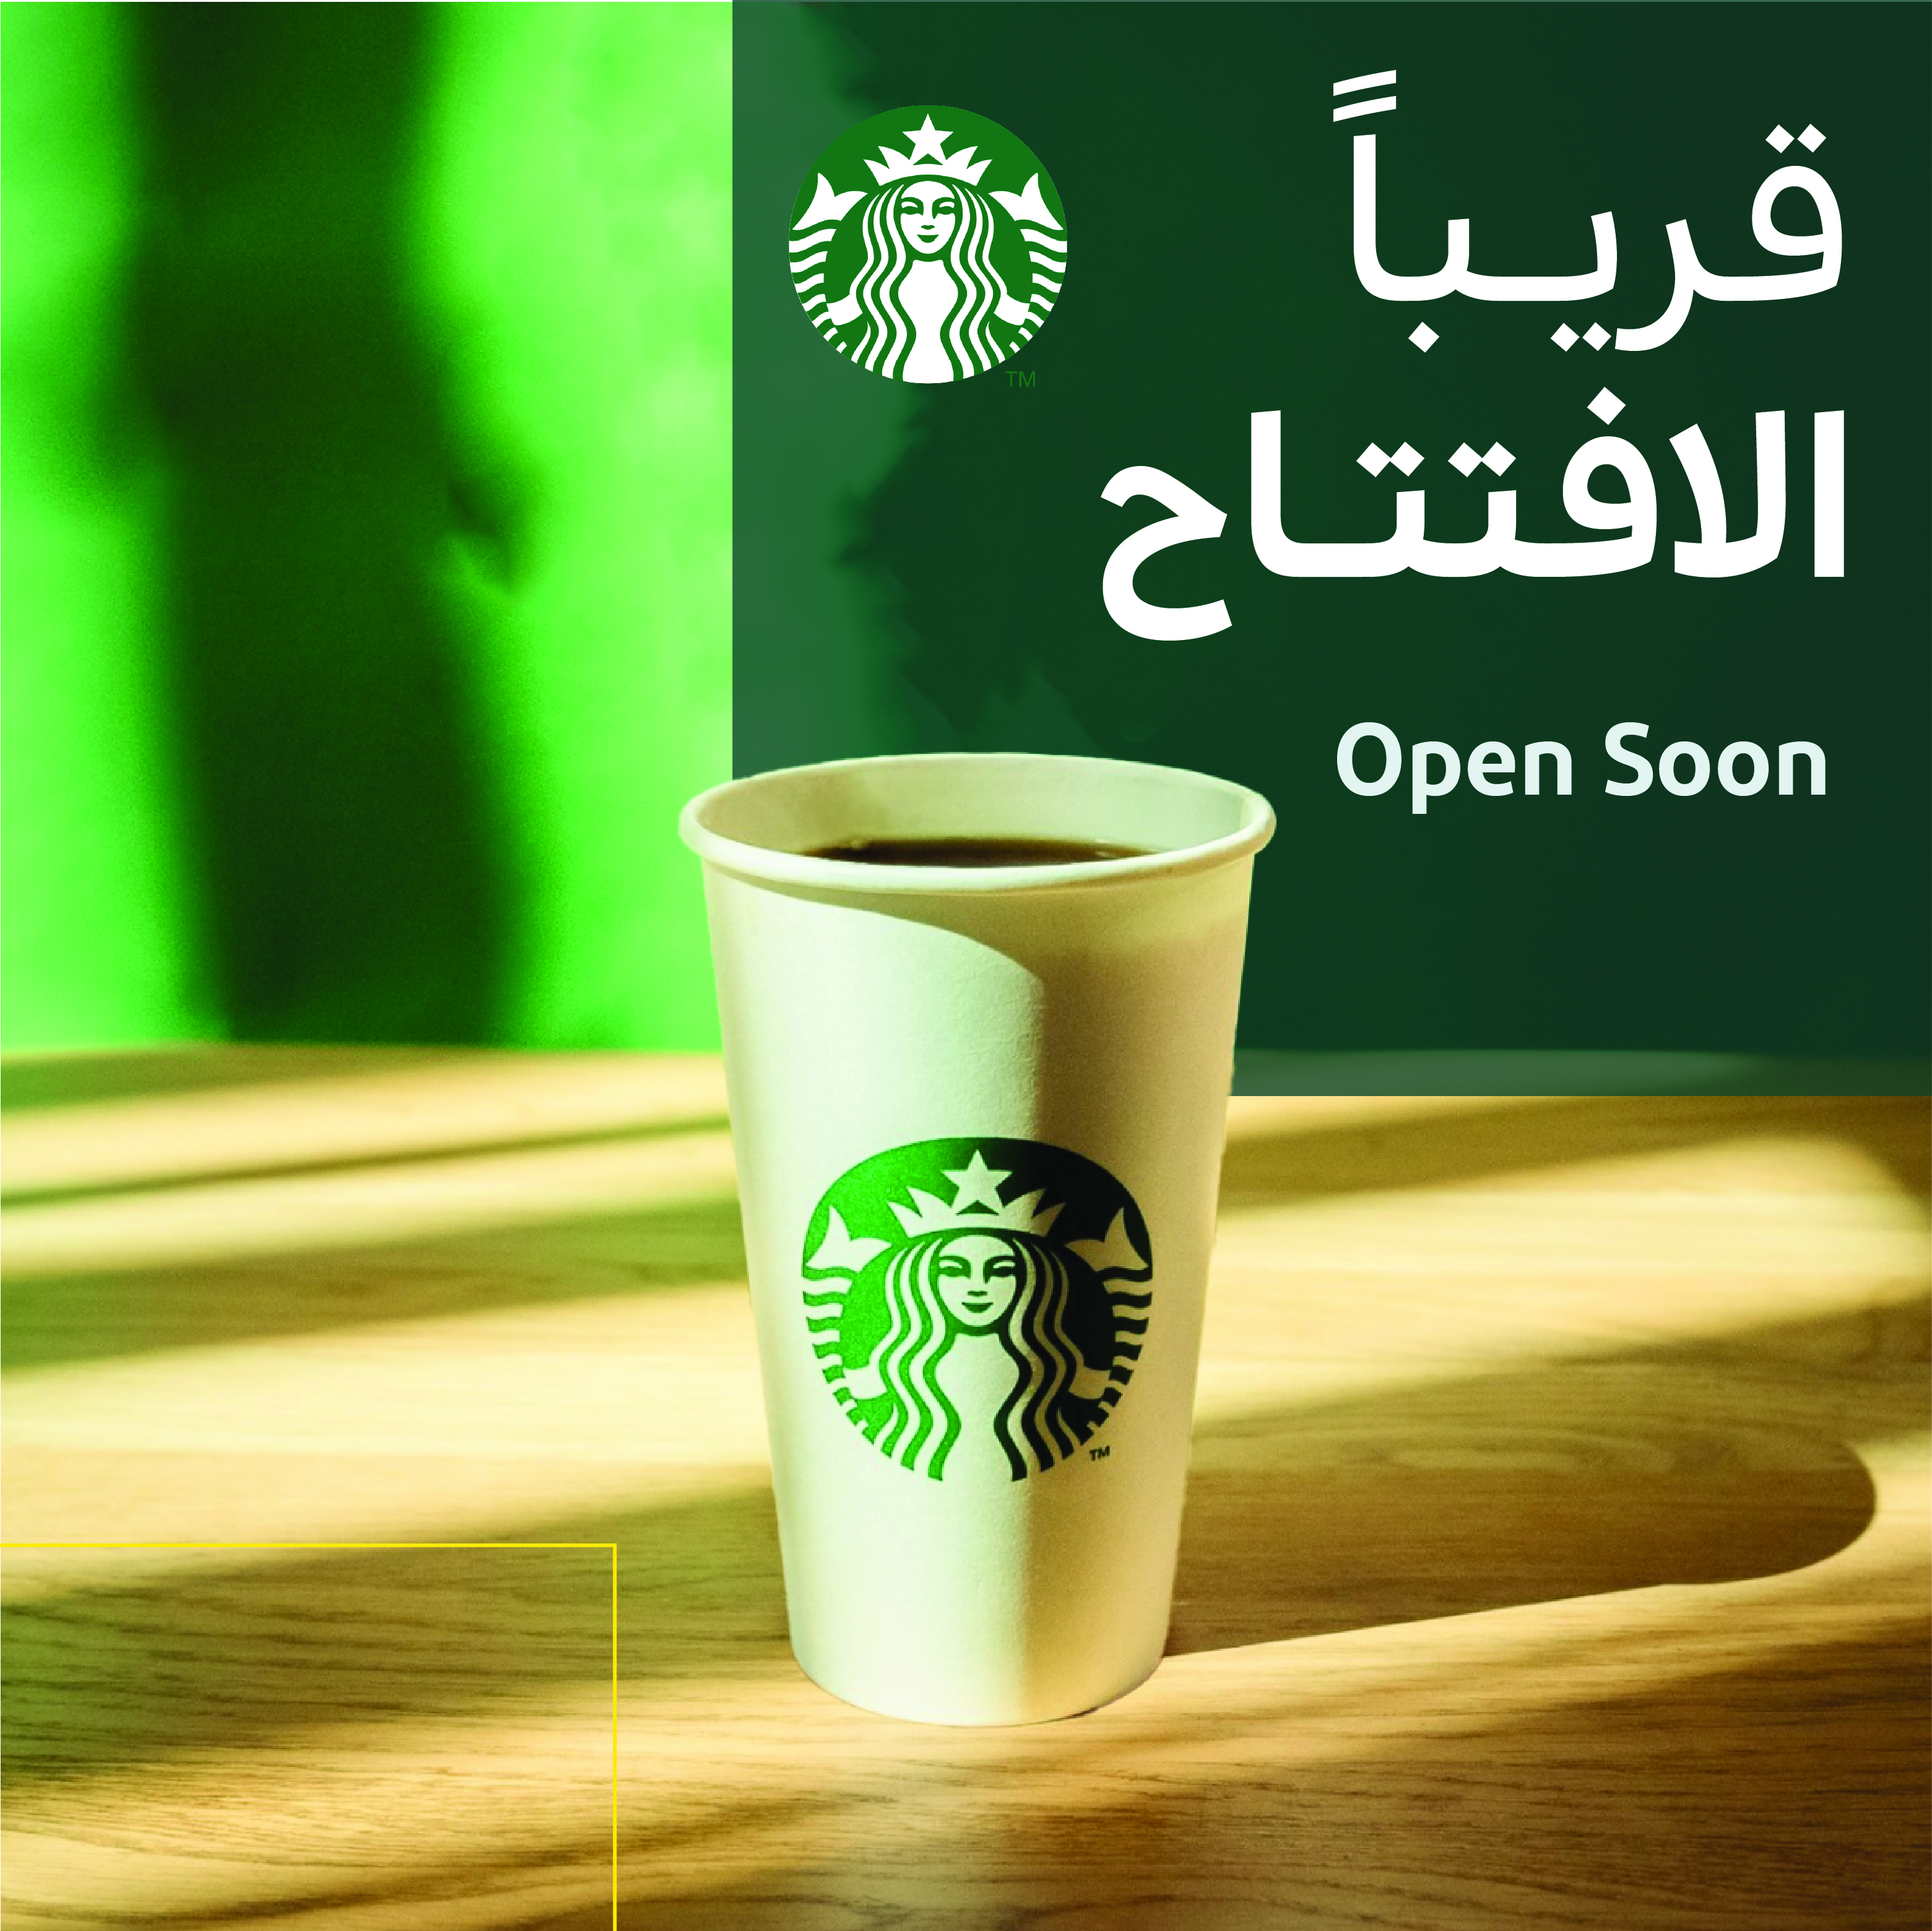 Starbucks Opening Soon